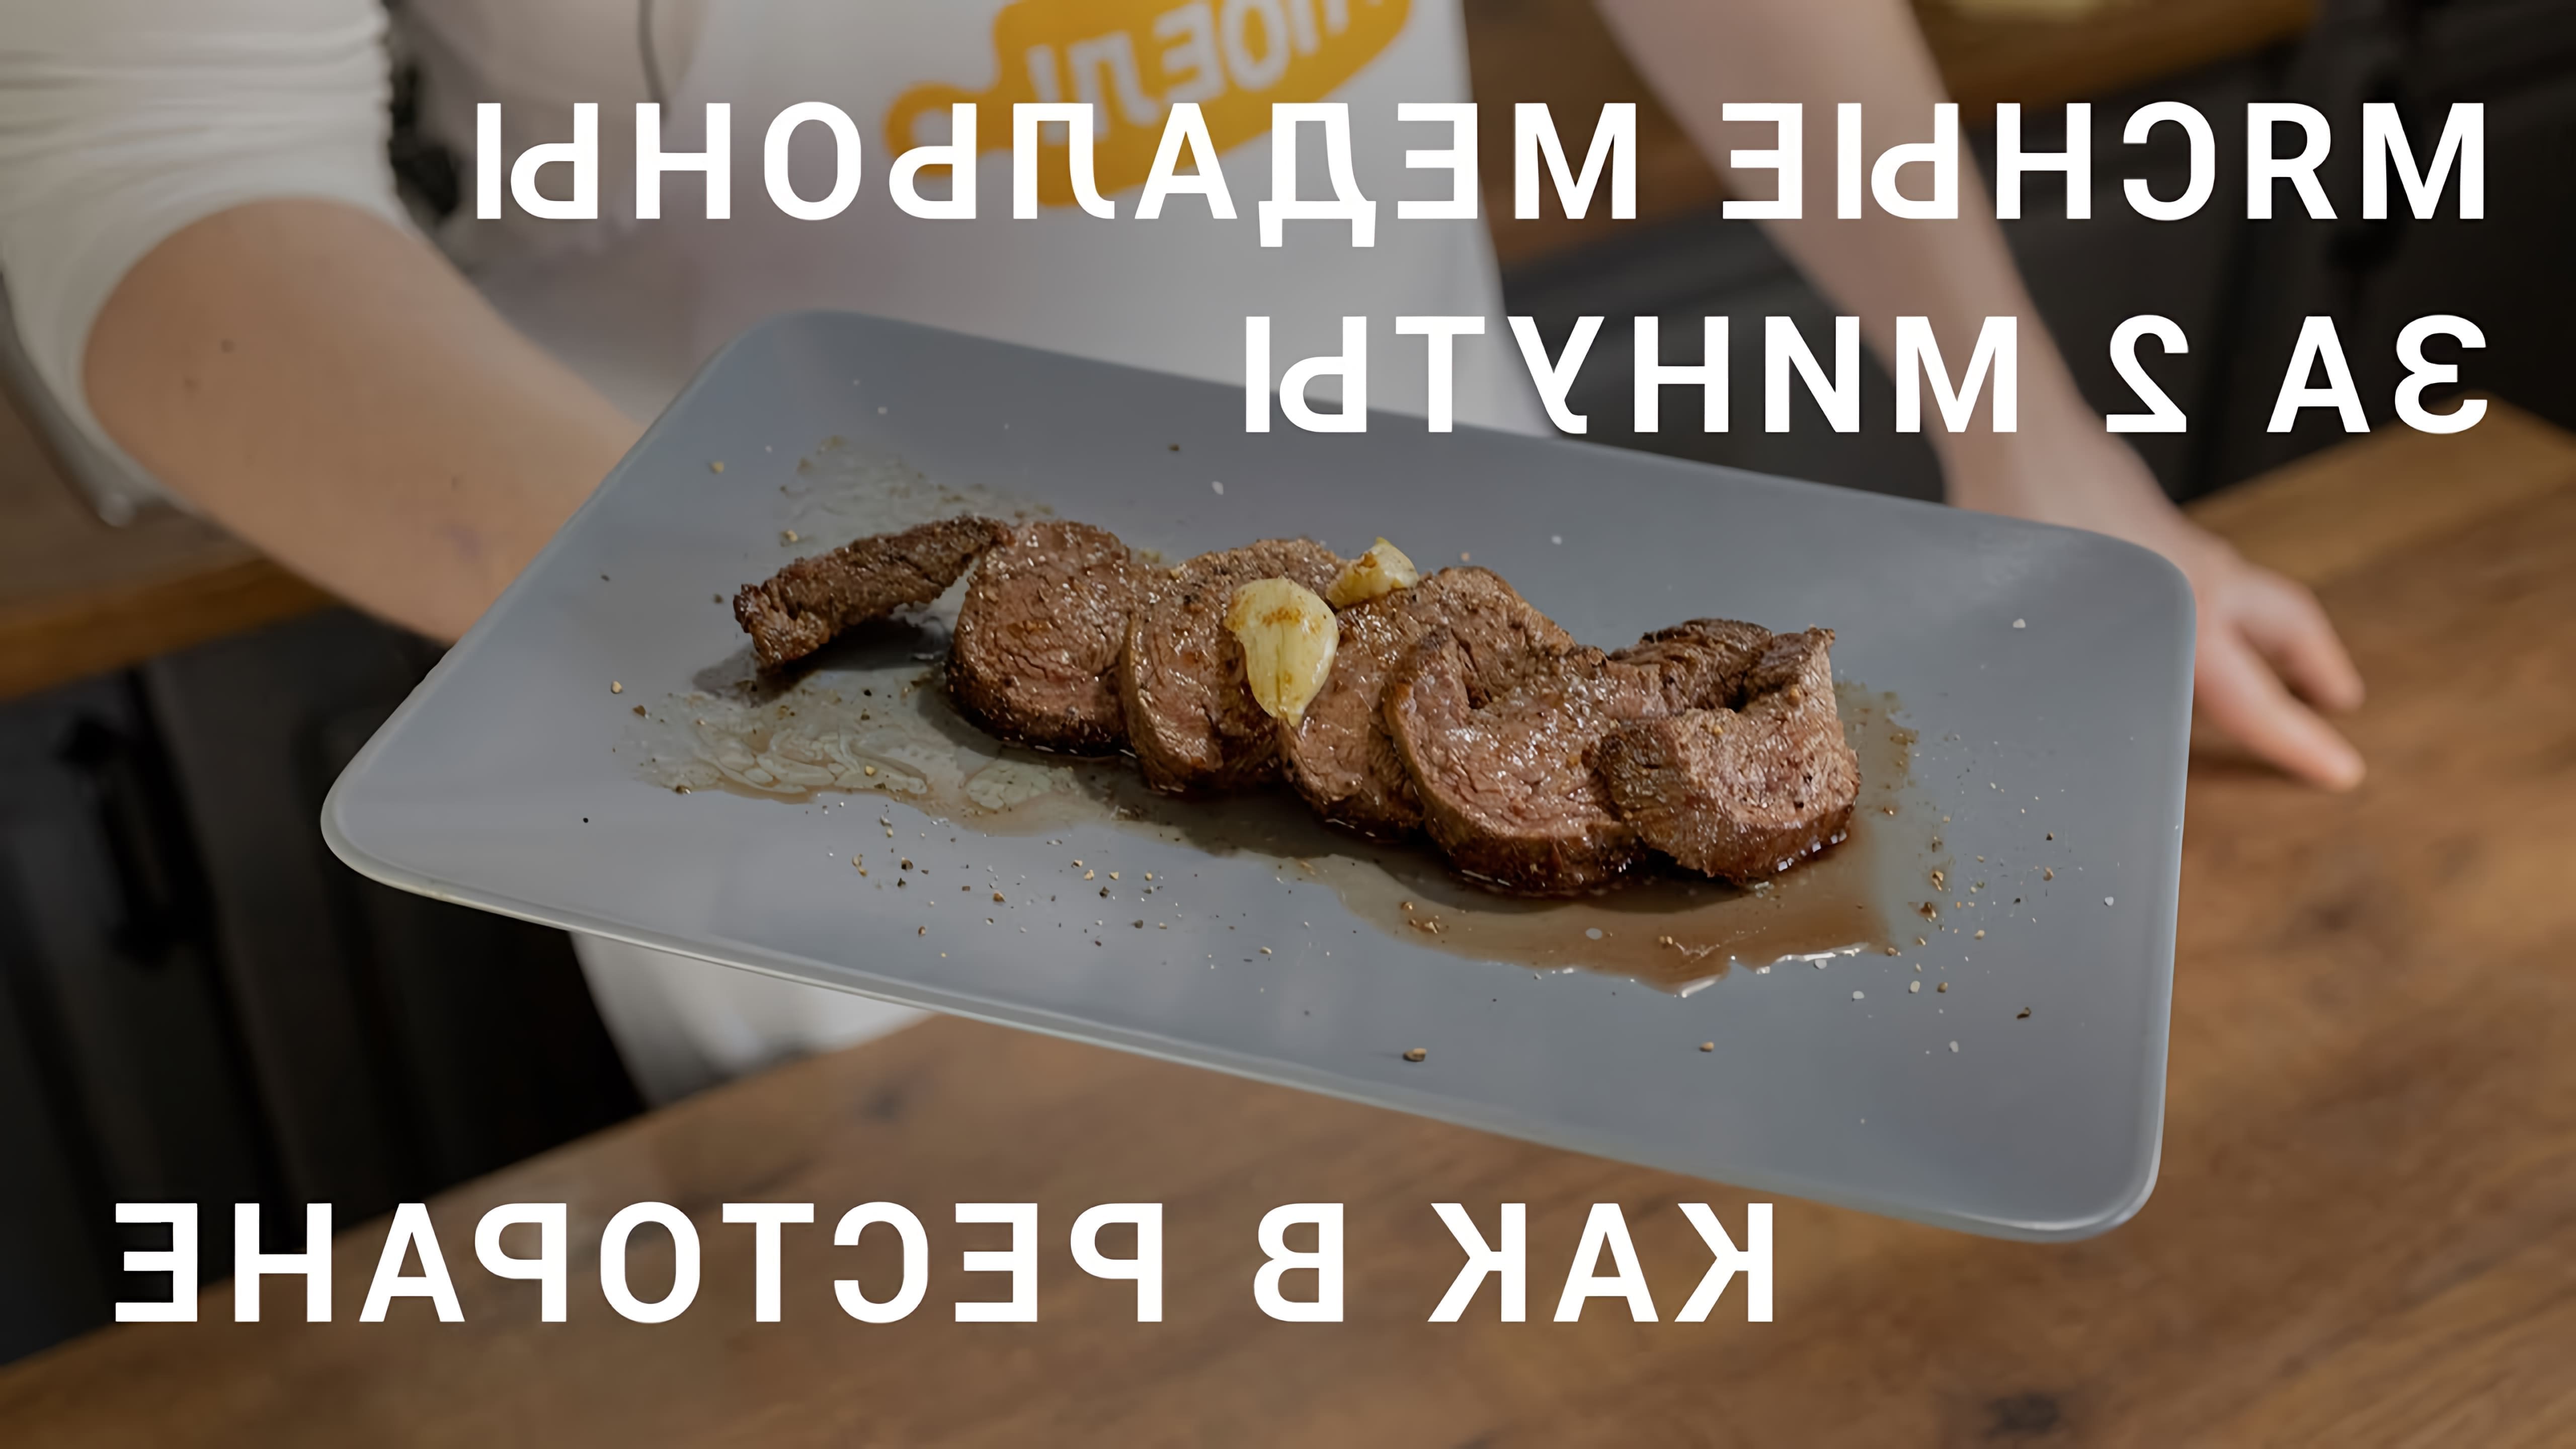 В этом видео Дмитрий Шведов показывает, как приготовить мясные медальоны, которые можно подать как в ресторане